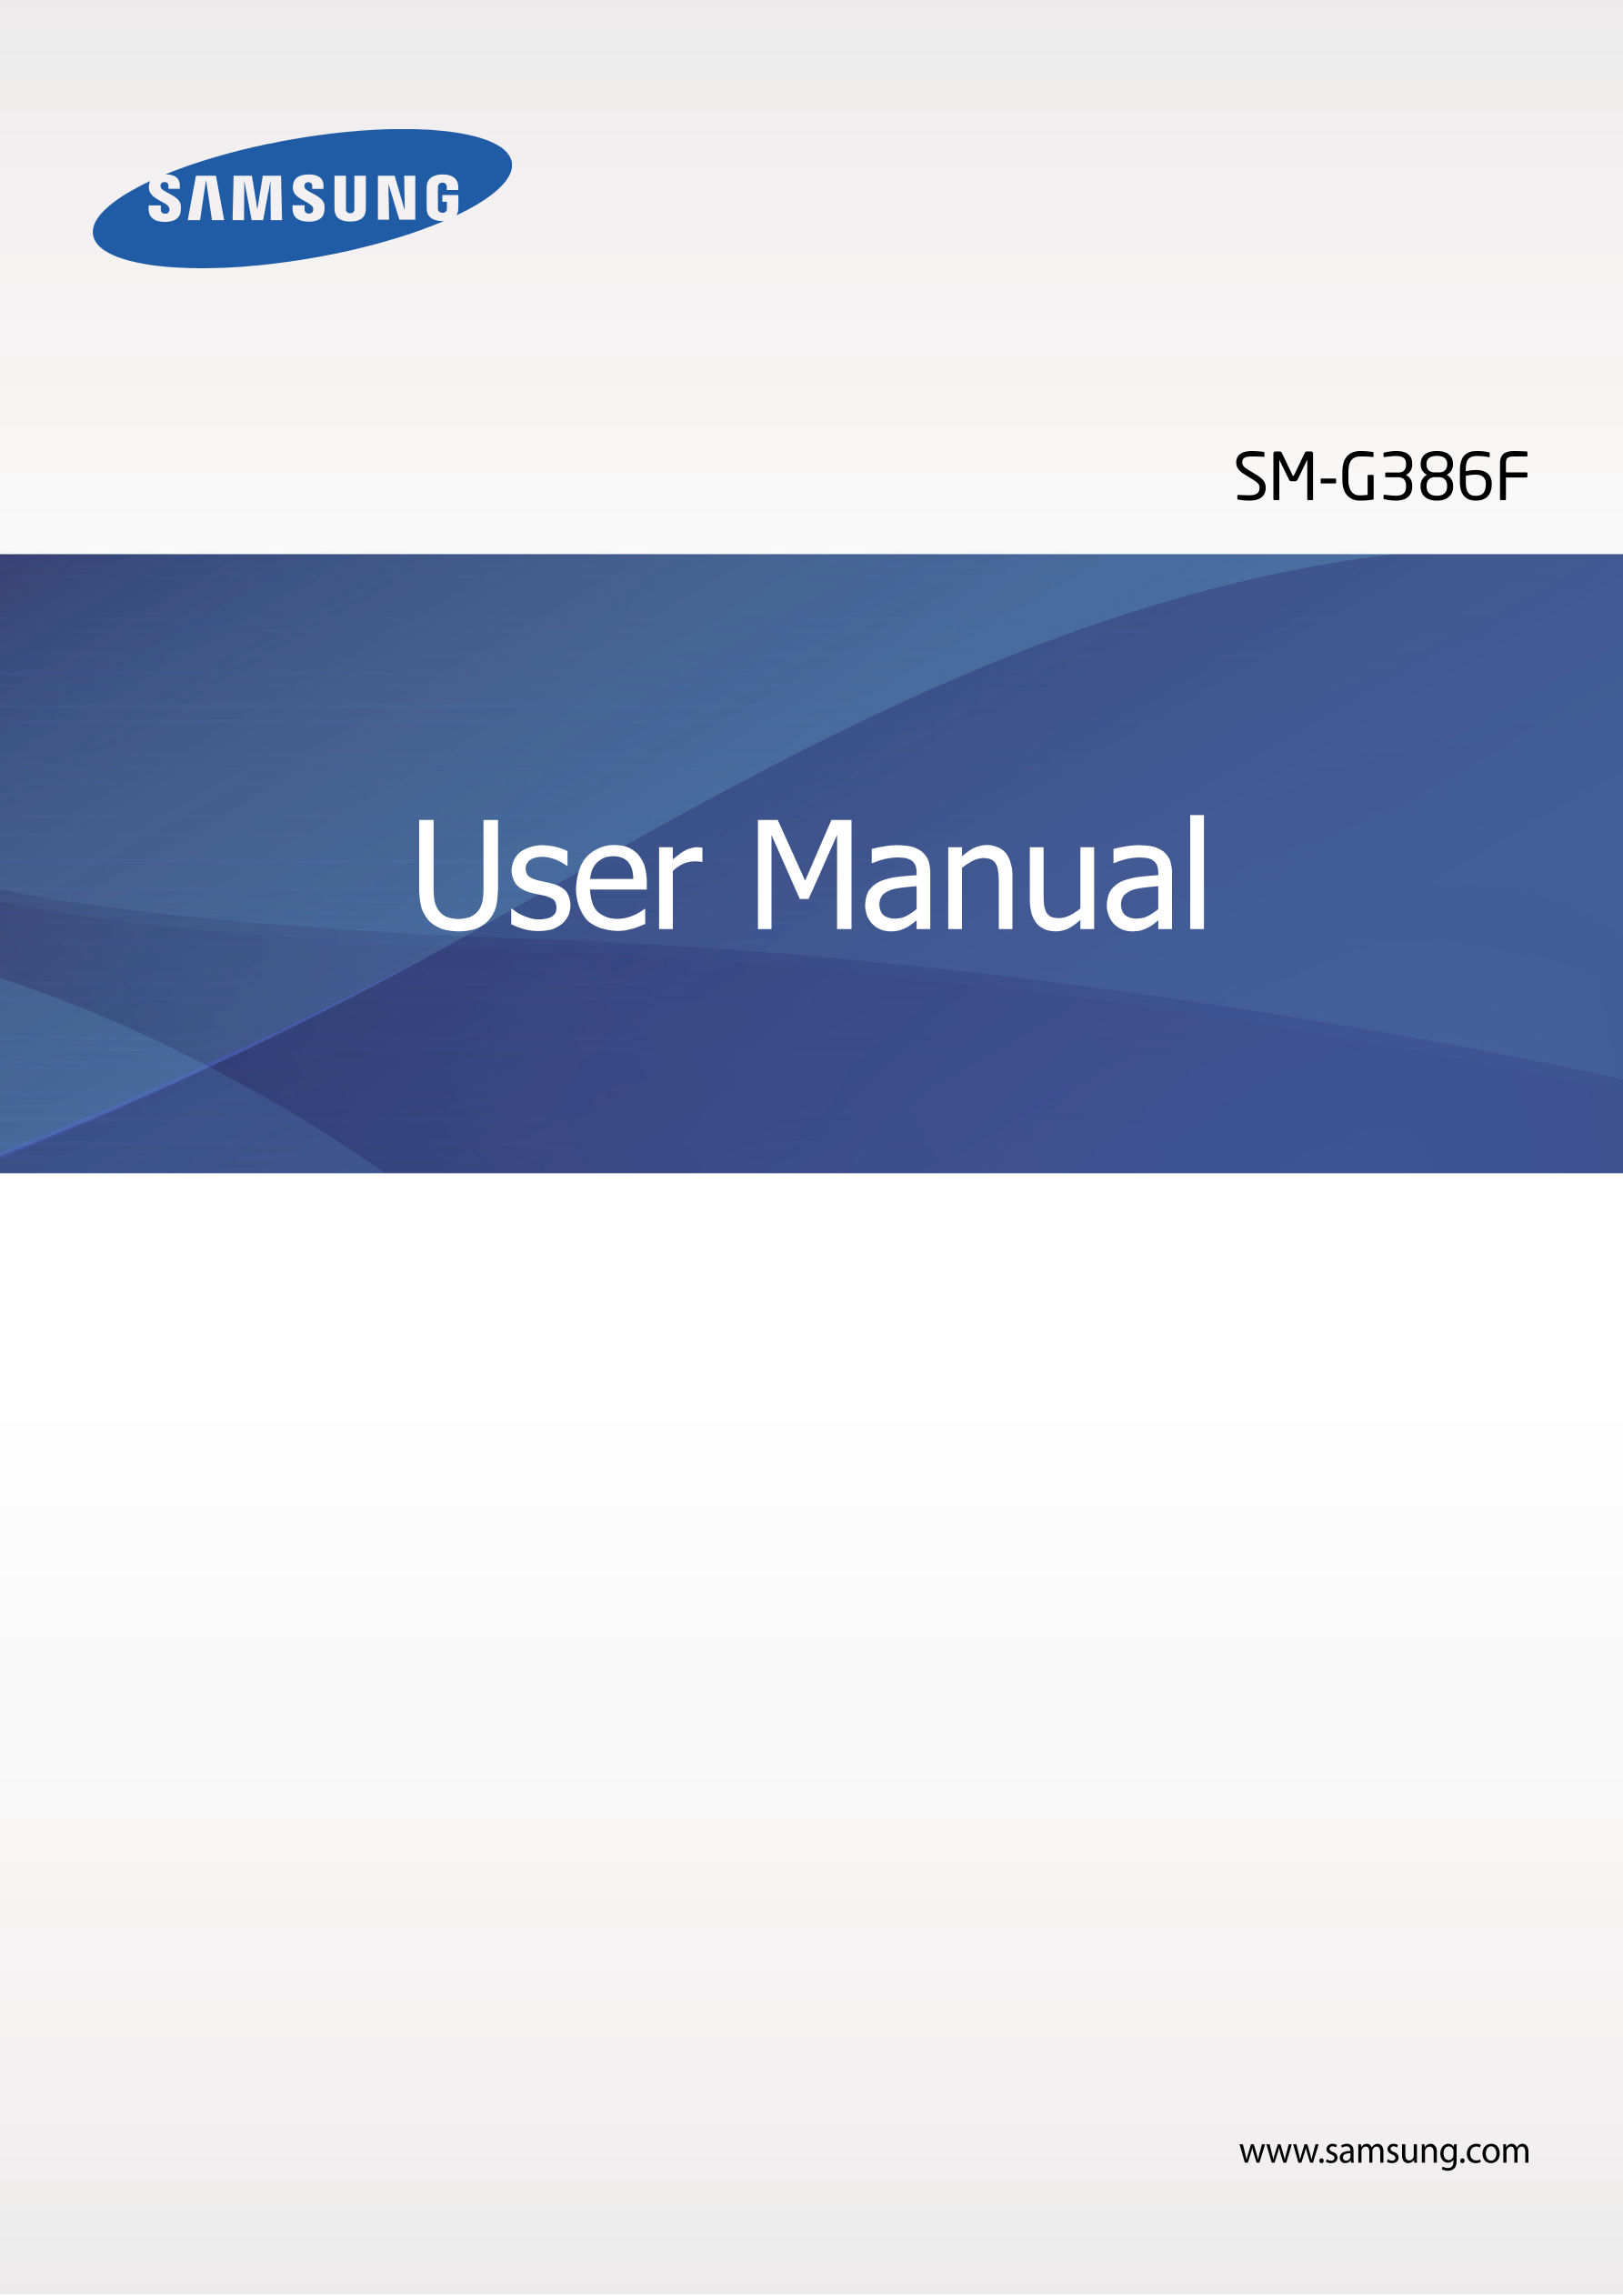 SM-G386F
User Manual
www.samsung.com